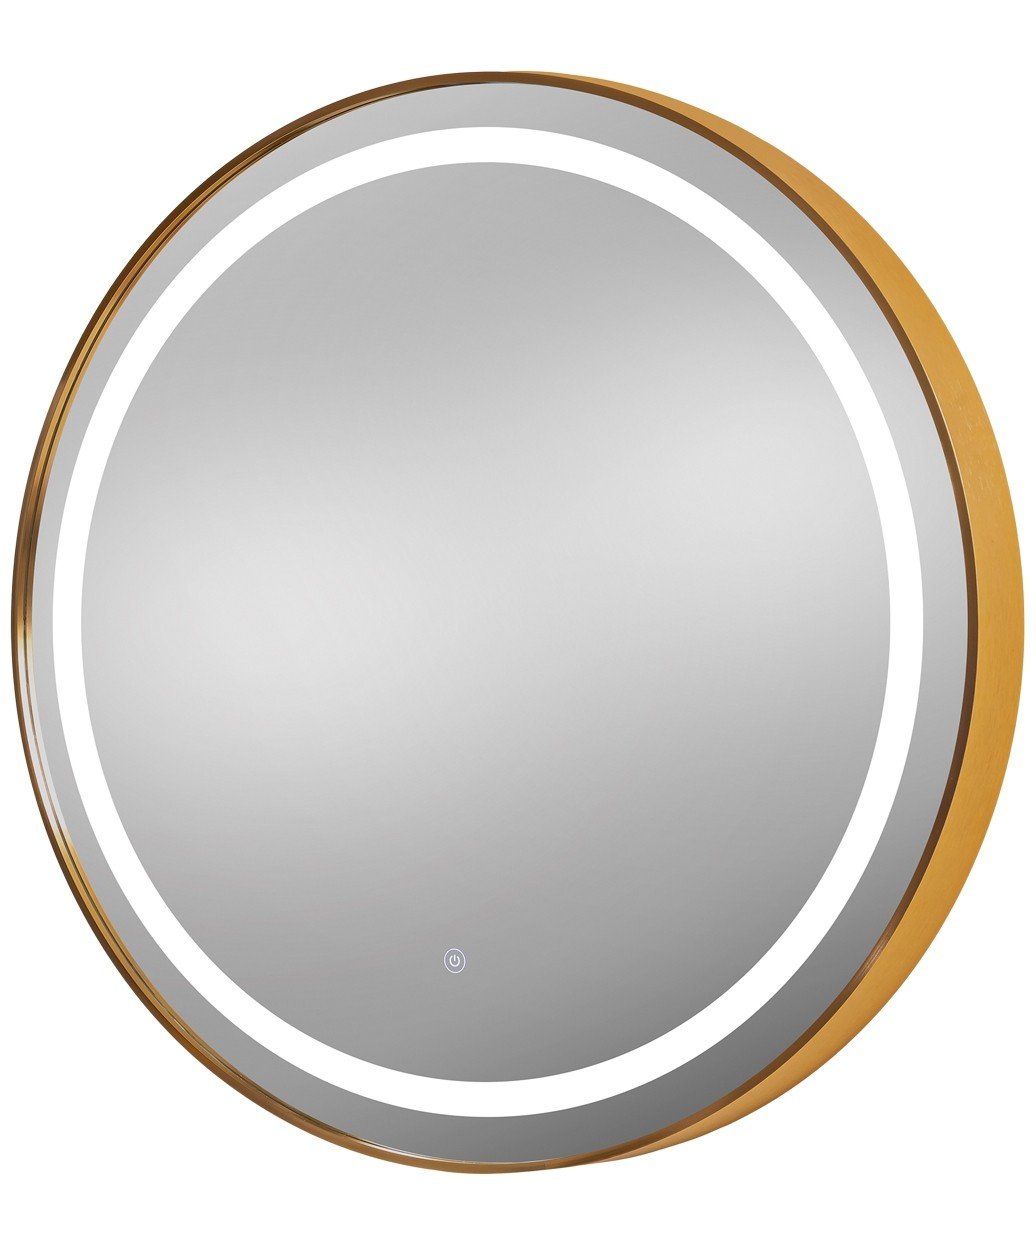 Pibbs 9880 Sola Gold 36" Round LED Salon Mirror